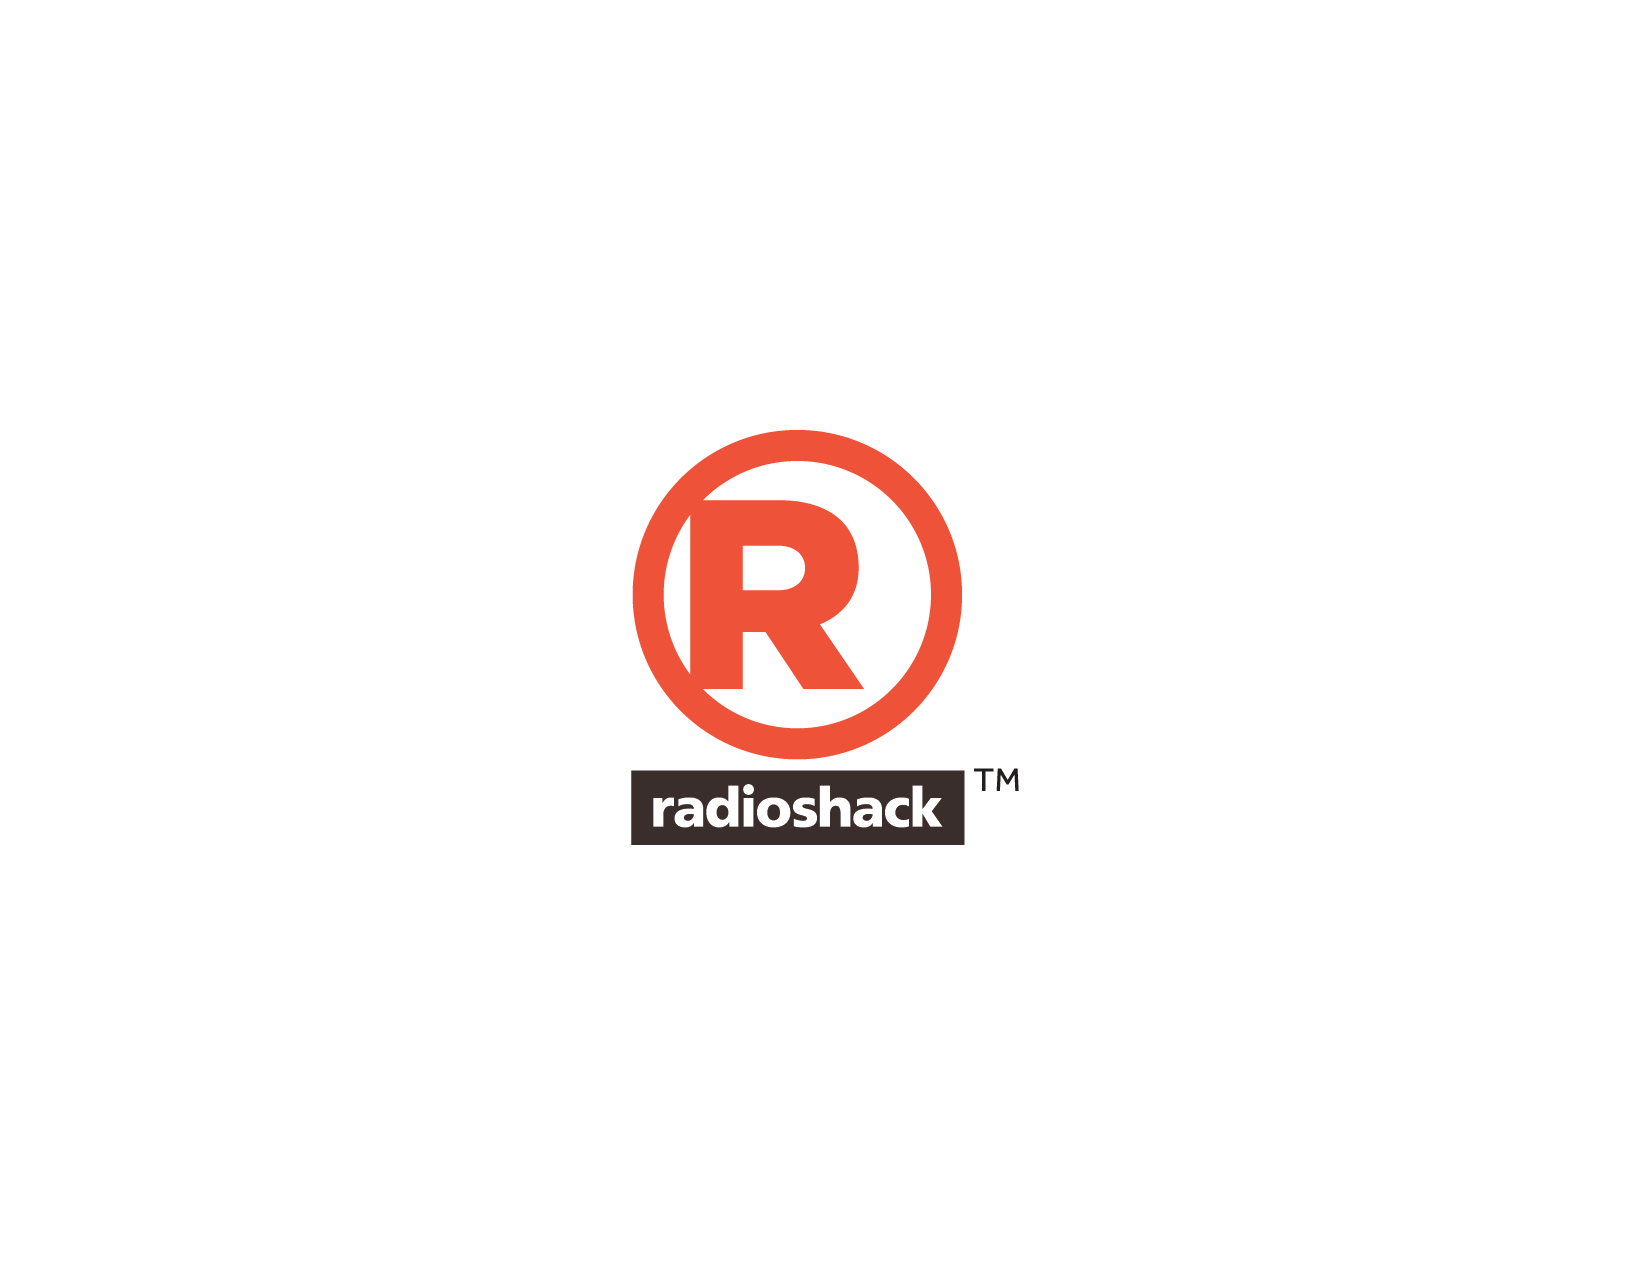 Radio Shack Logo - RadioShack Logo - Vertical | RadioShack Antigua